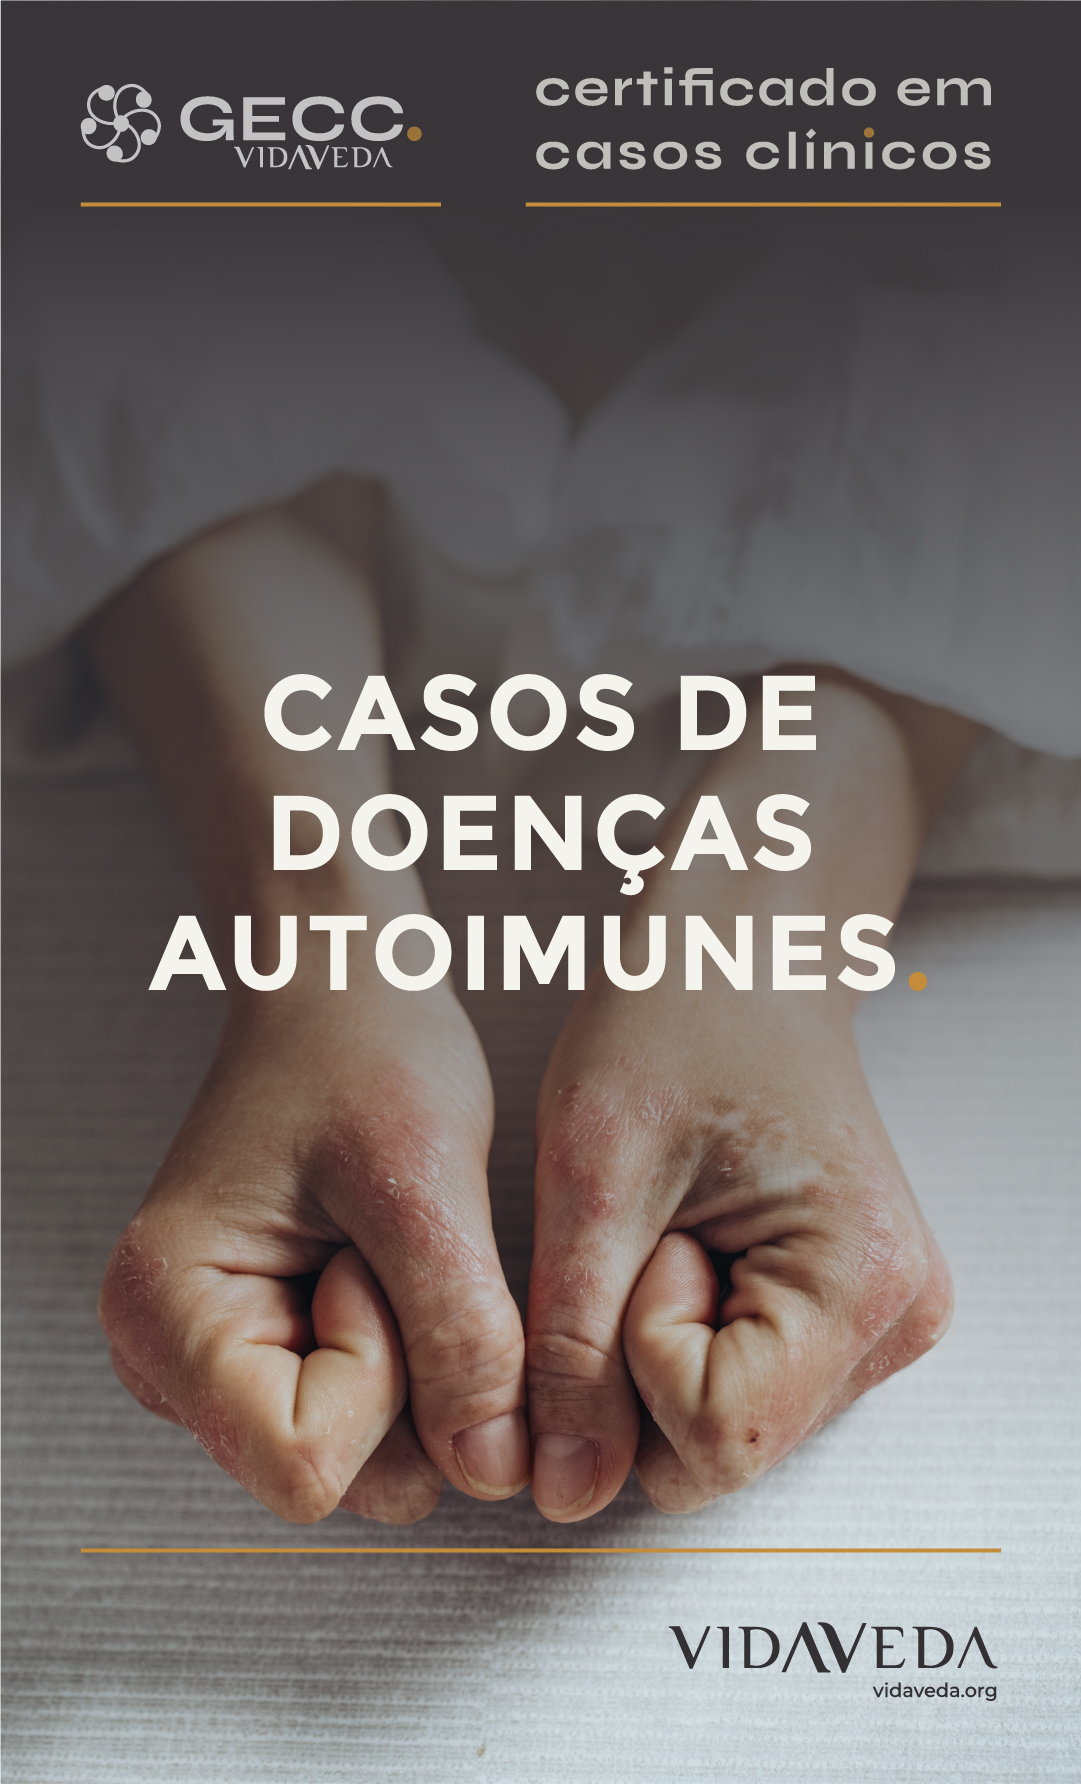 GECC -  CASOS DE DOENÇAS AUTOIMUNES